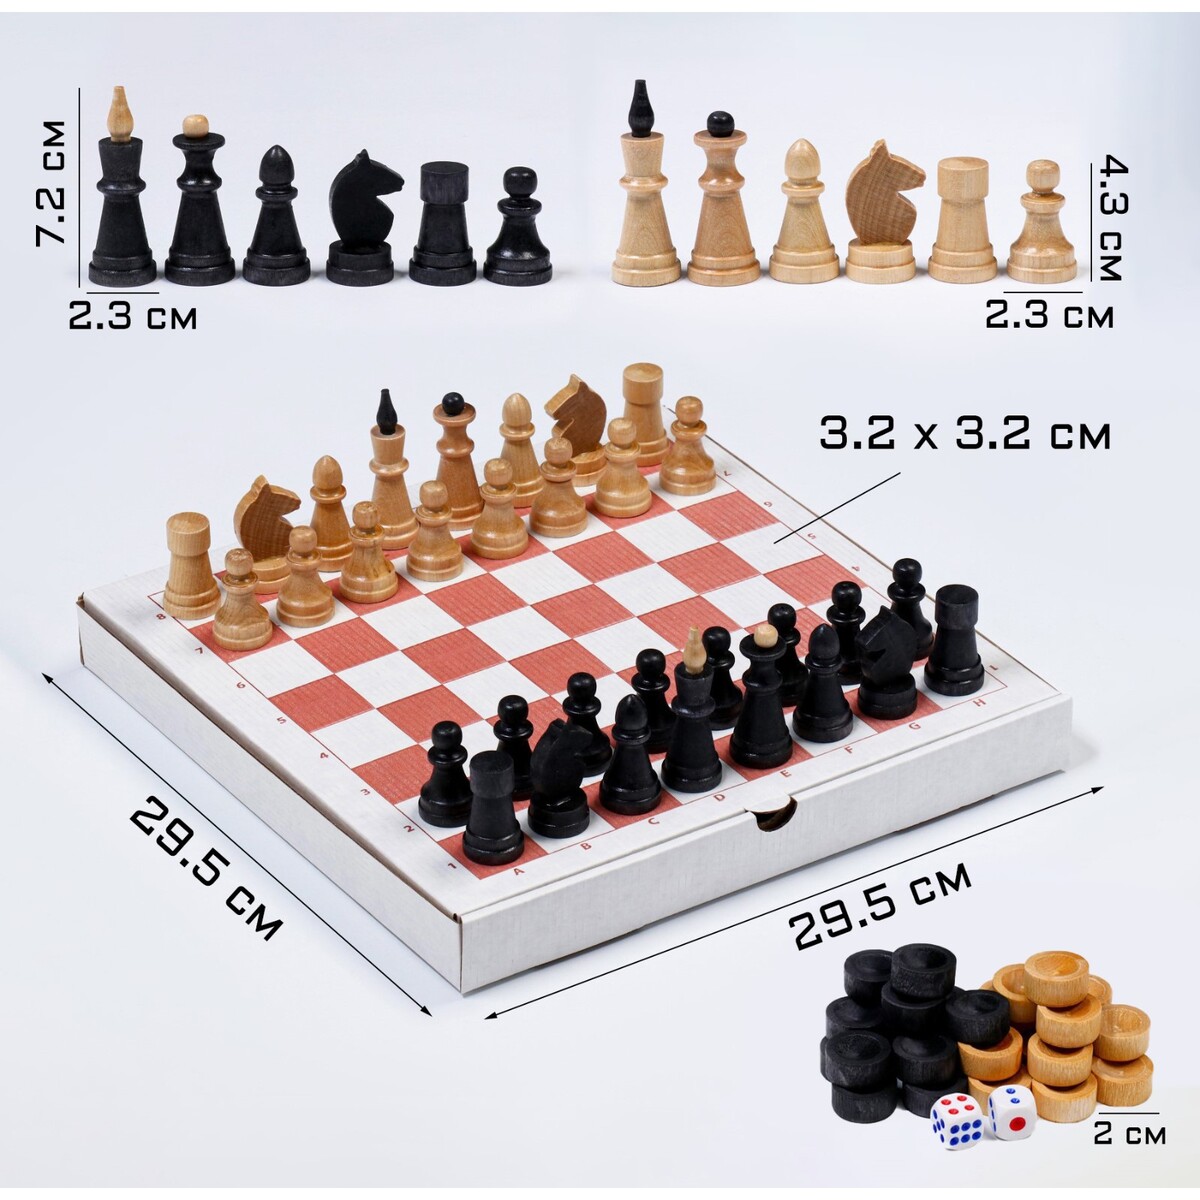 Настольная игра 3 в 1: шахматы, шашки, нарды, деревянные фигуры, доска 29.5 х 29.5 см настольная игра 3 в 1 шахматы шашки нарды деревянные фигуры доска 29 5 х 29 5 см